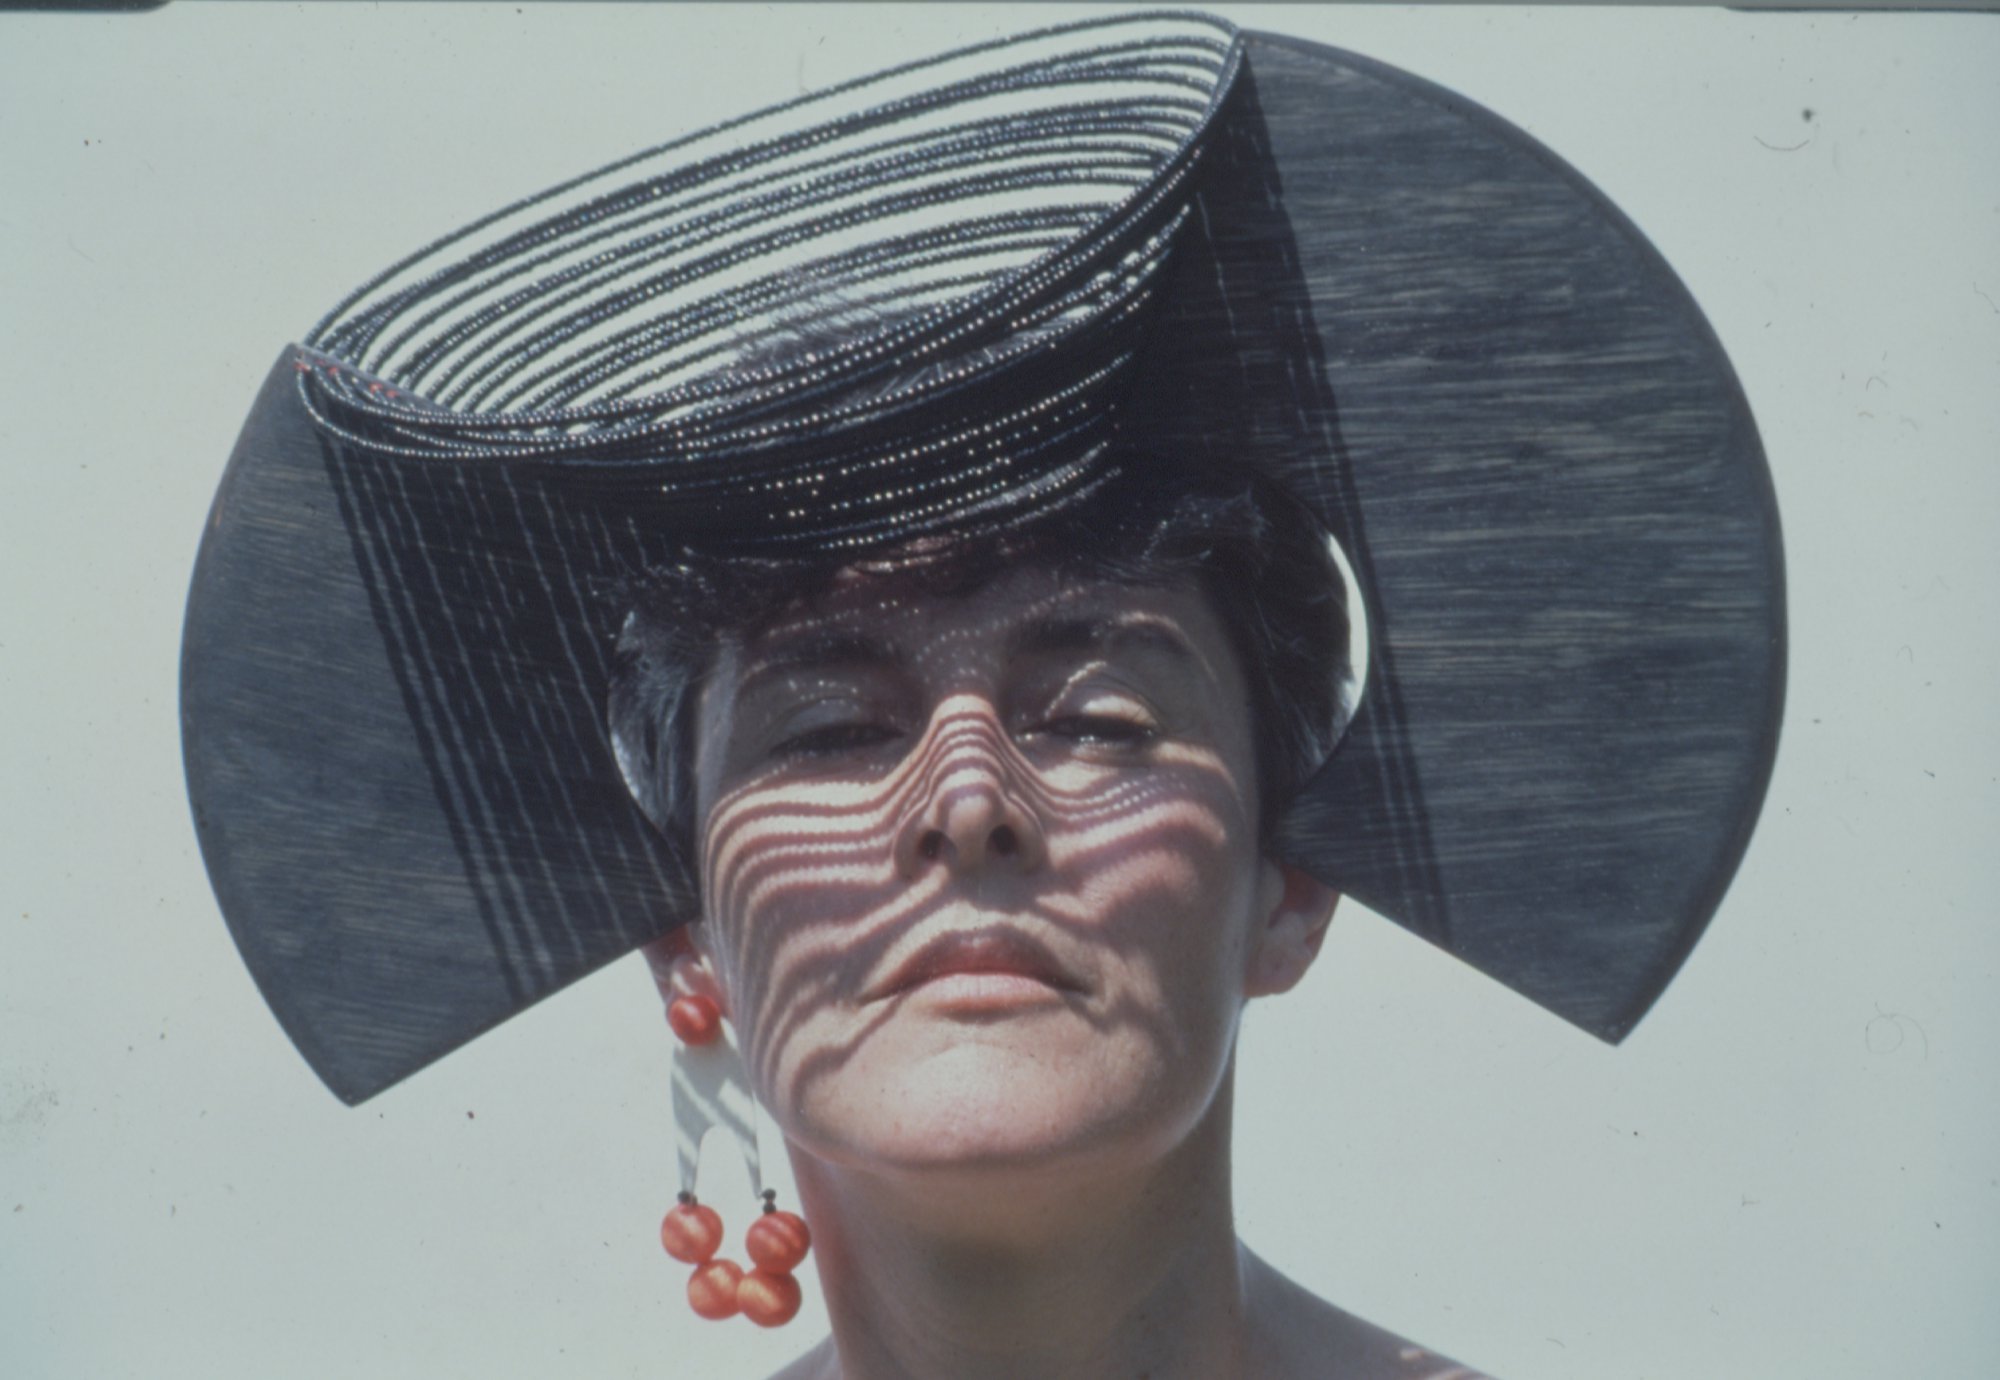 Liliane Lijn, Horned Head, plywood, piano wire, glass beads, 27 x 70 x 37 cm (10 5/8 x 27 1/2 x 14 5/8 in), 1985